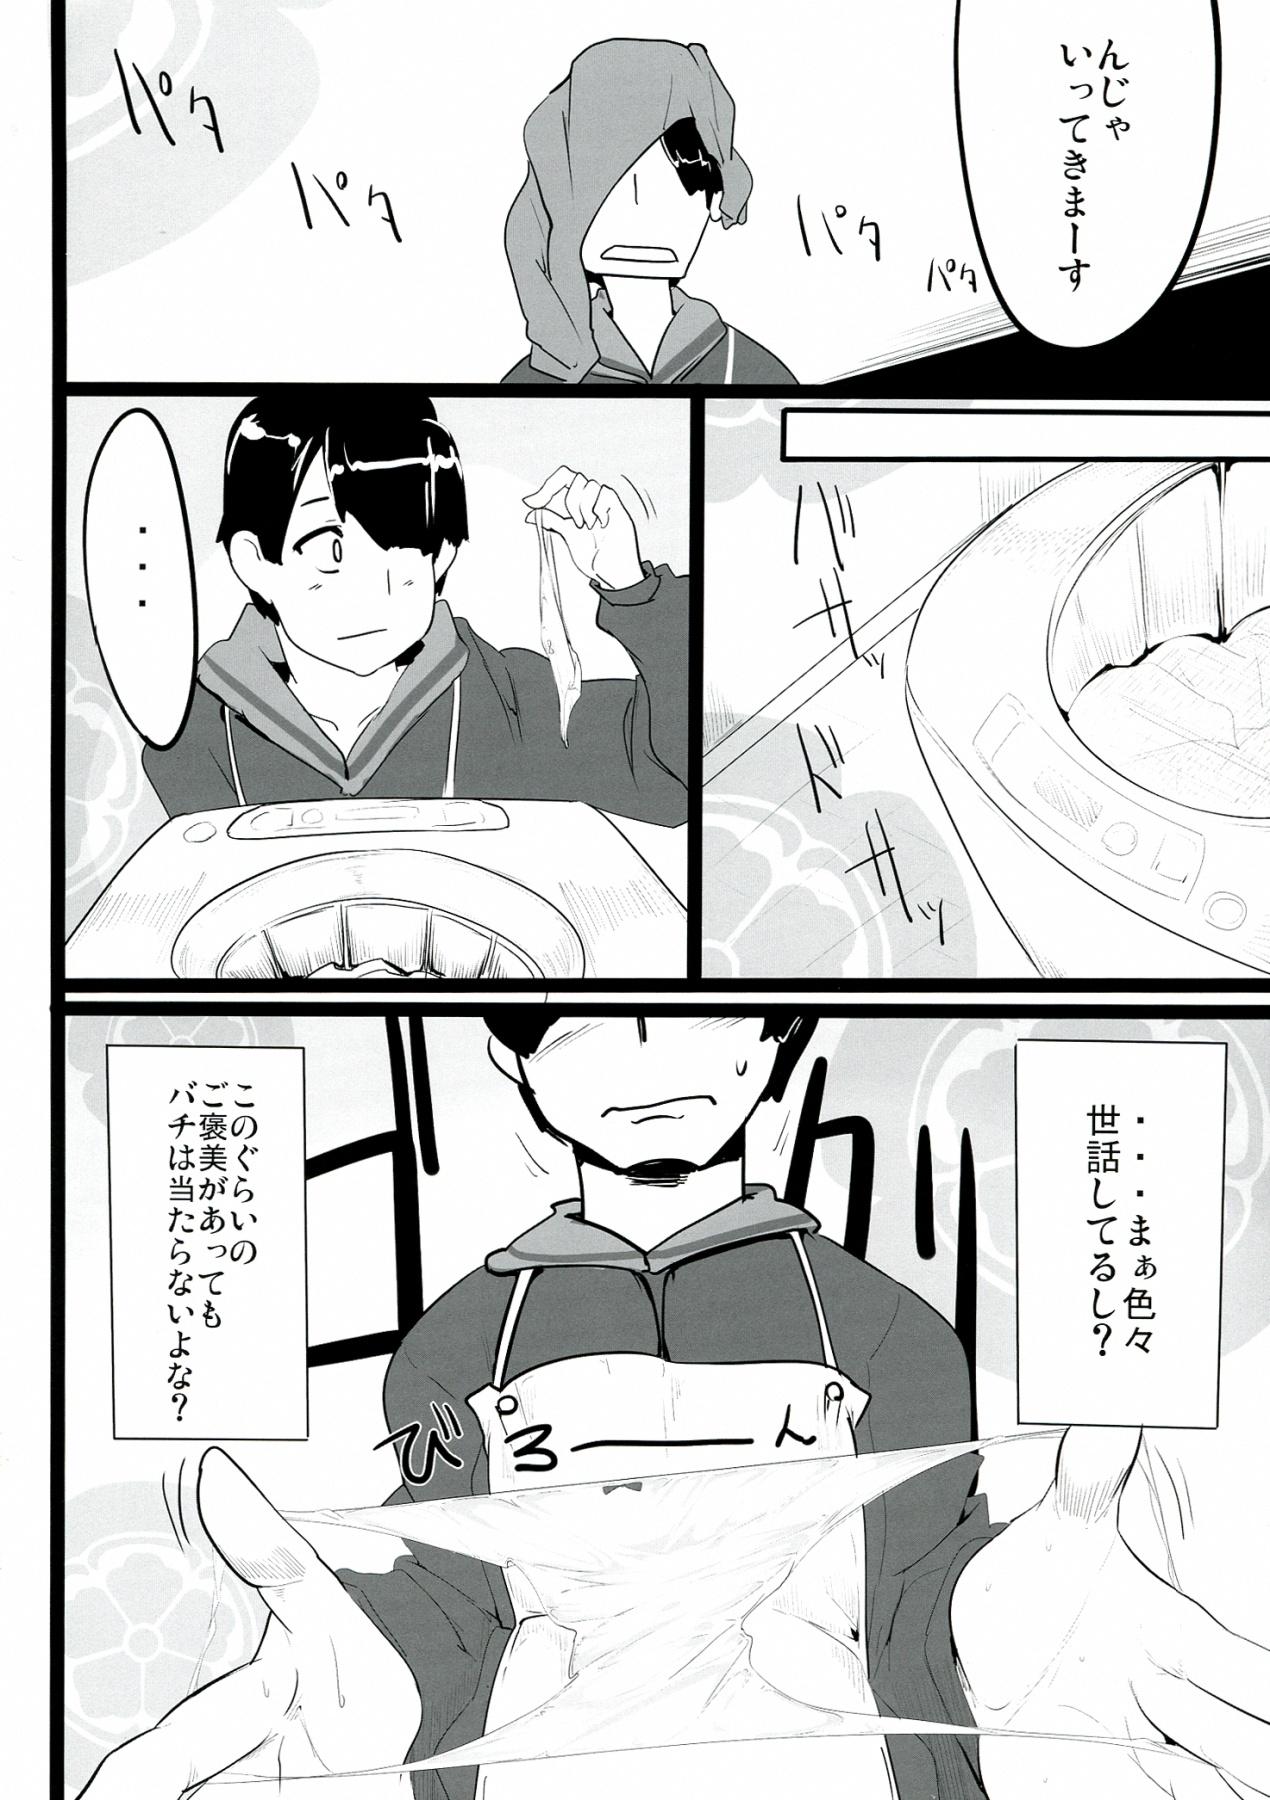 18 Year Old Zehi ni Oyobazu. - Sengoku collection Analplay - Page 6